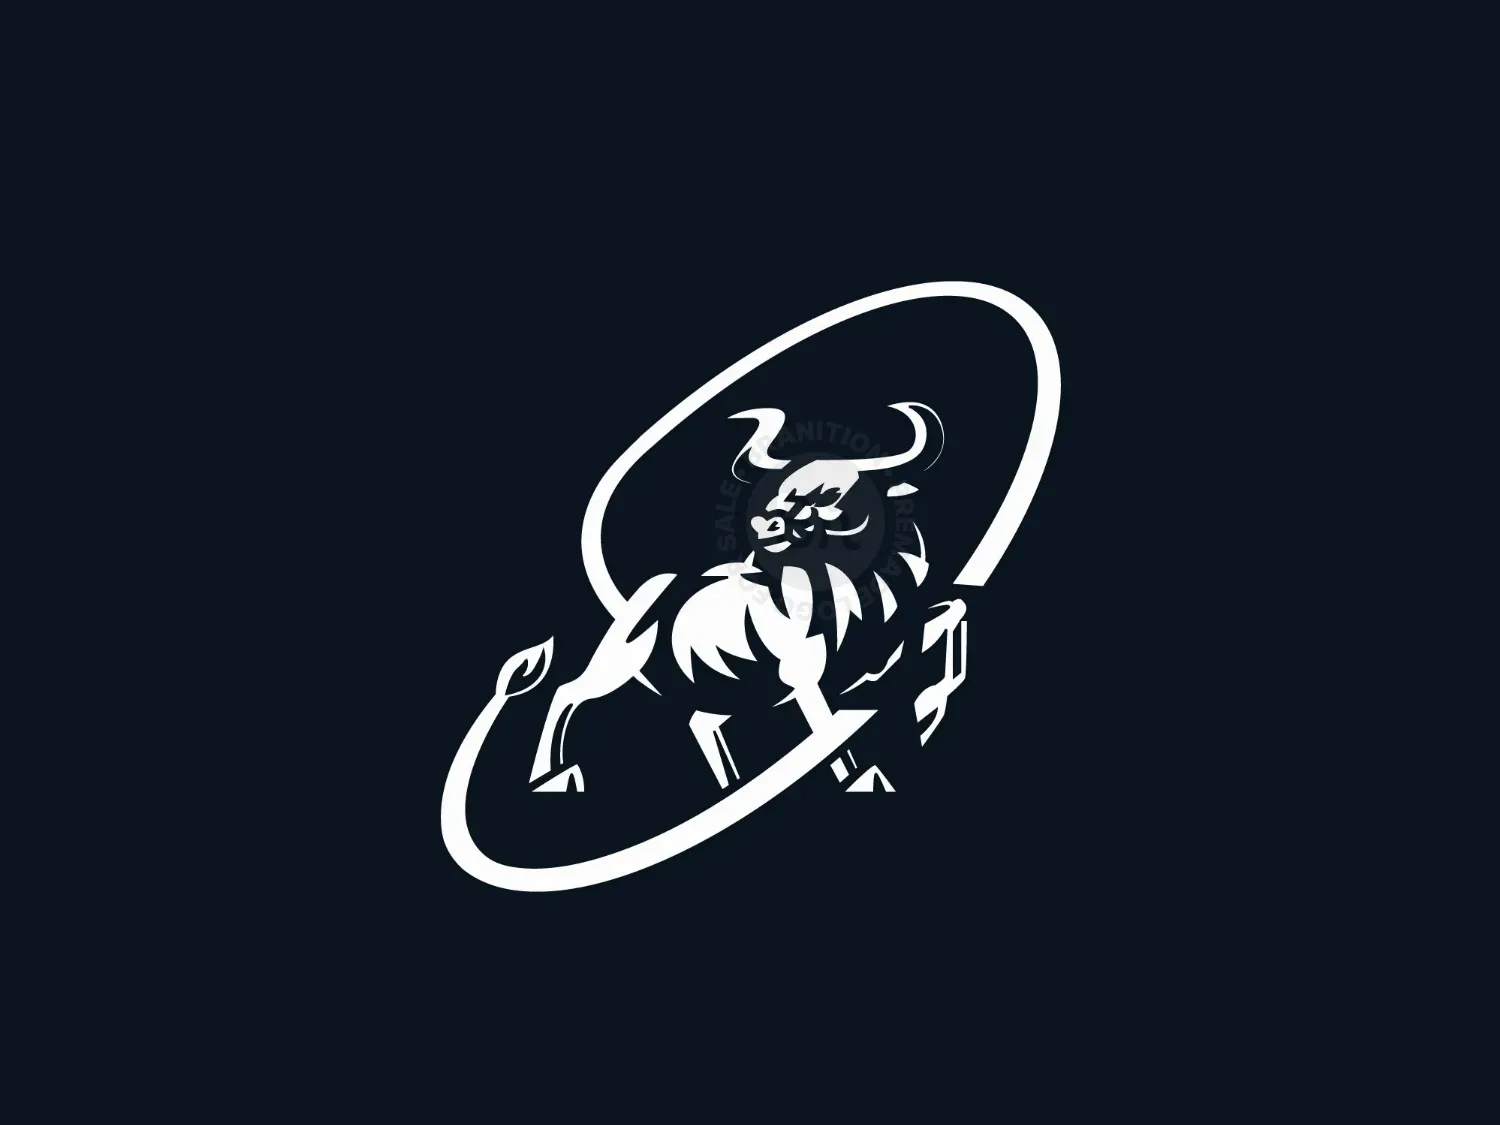 Lasso Bull Logo - Branition